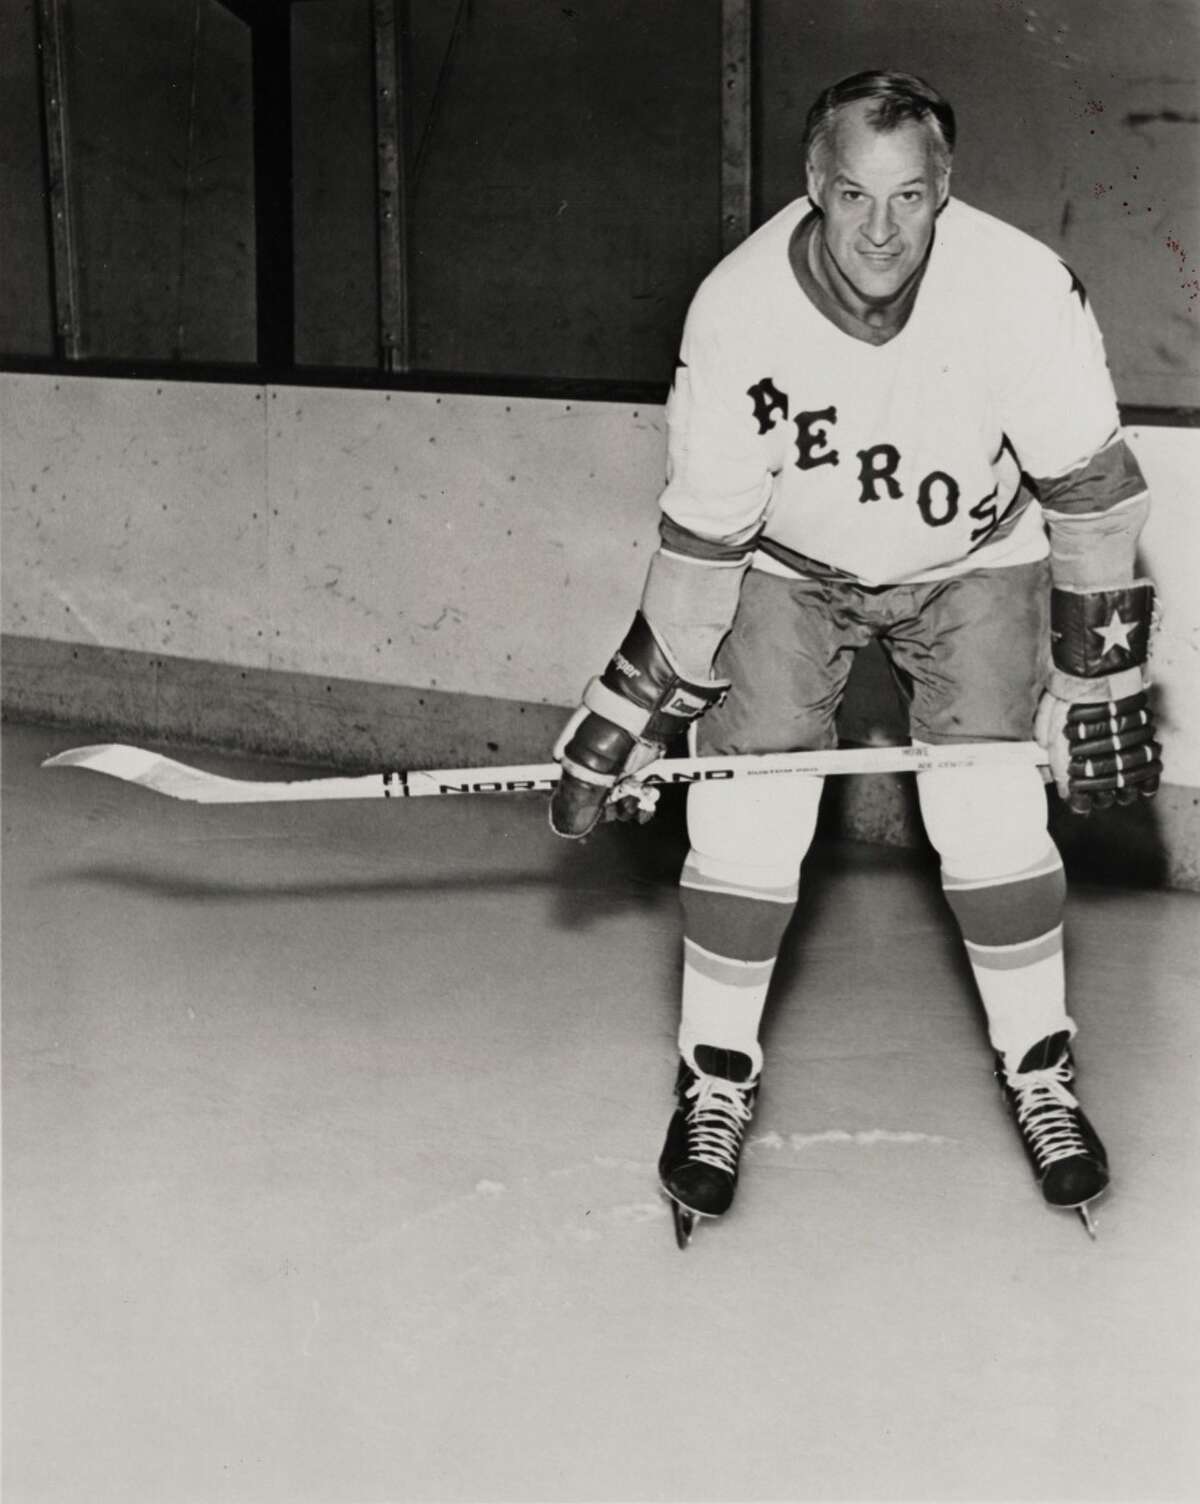 Former Red Wings, Aeros legend Gordie Howe dies at 88